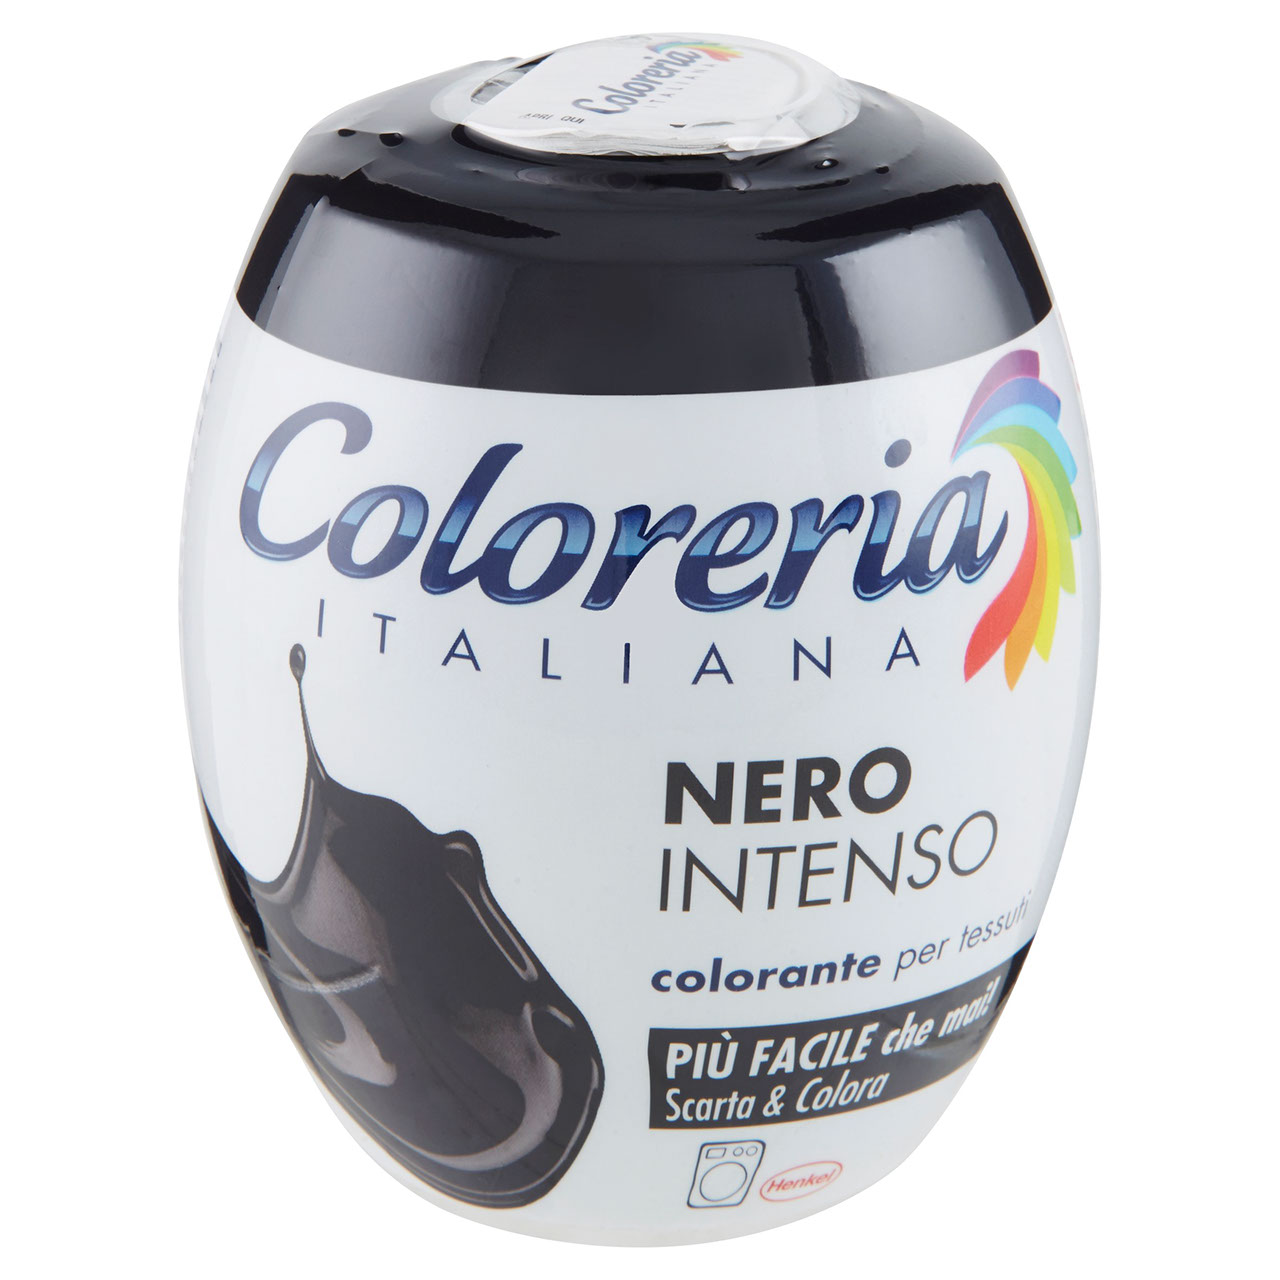 Nero Intenso Coloreria 350 gr. in vendita online